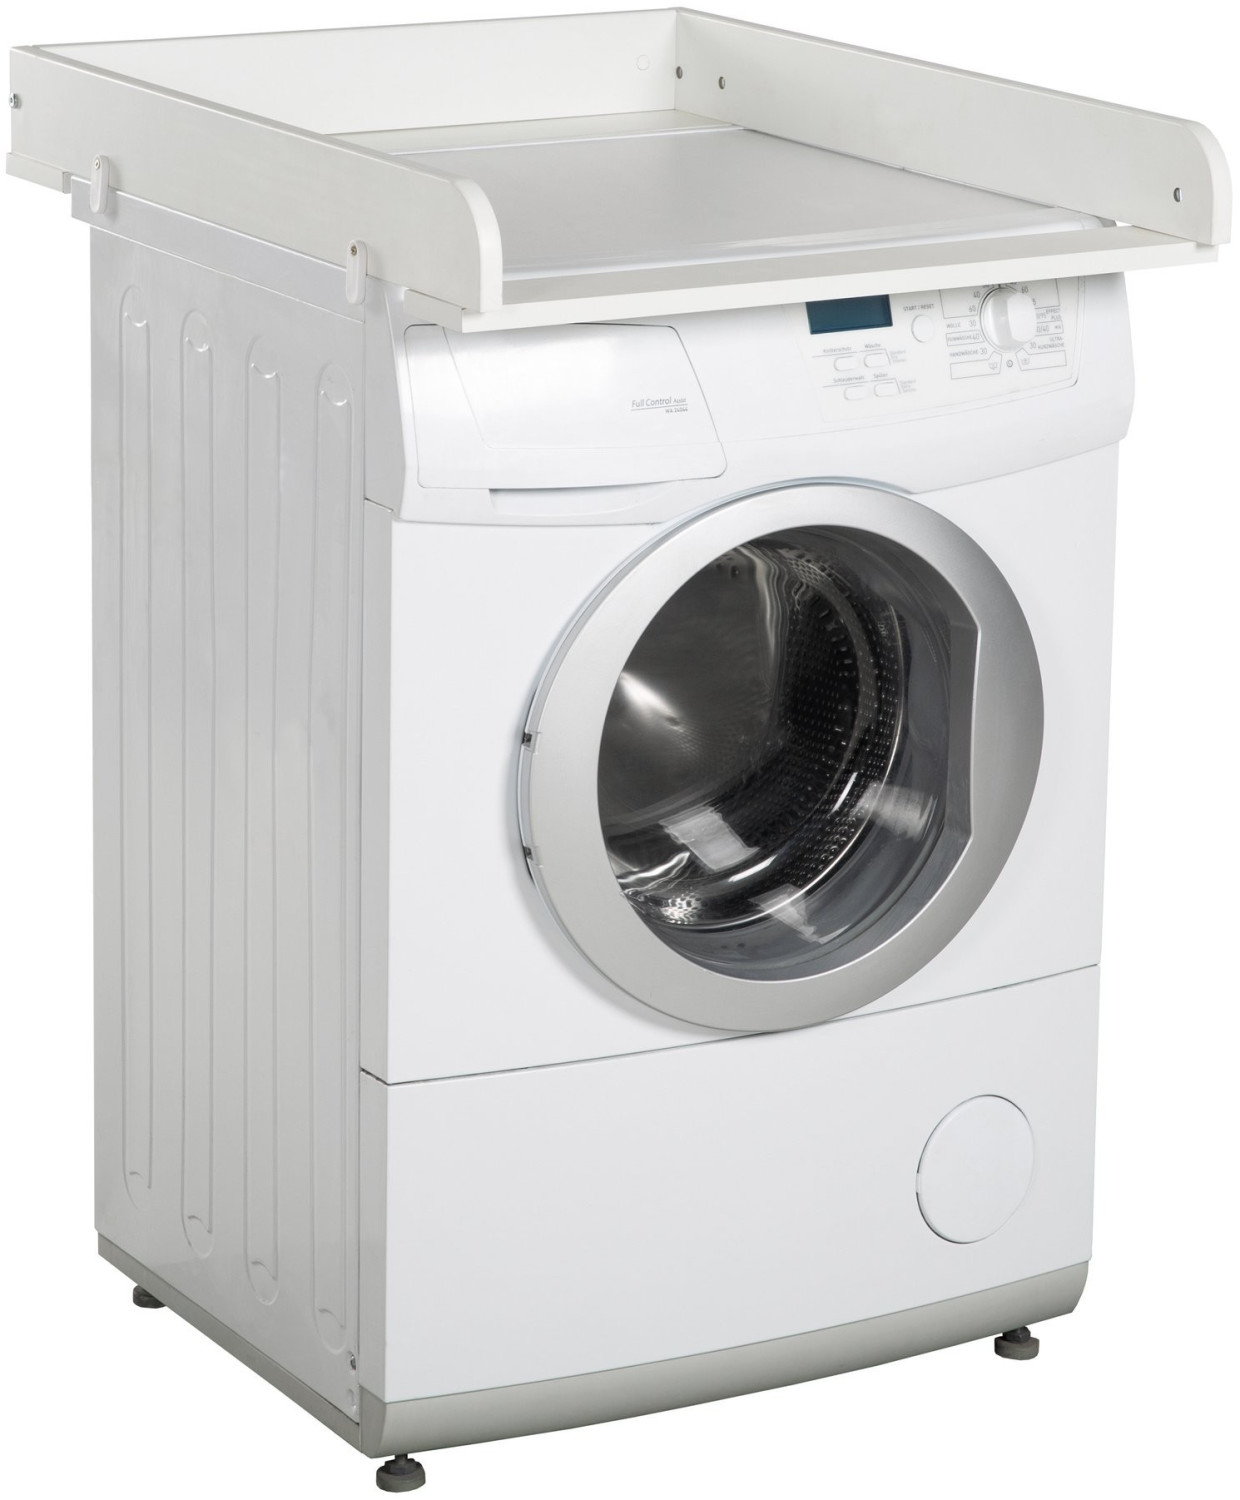 Roba Wickelplatte mit Wickelauflage Eulenbabys Waschmaschine Aufsatz € Preisvergleich ab bei Universalwickelunterlage für 50,91 